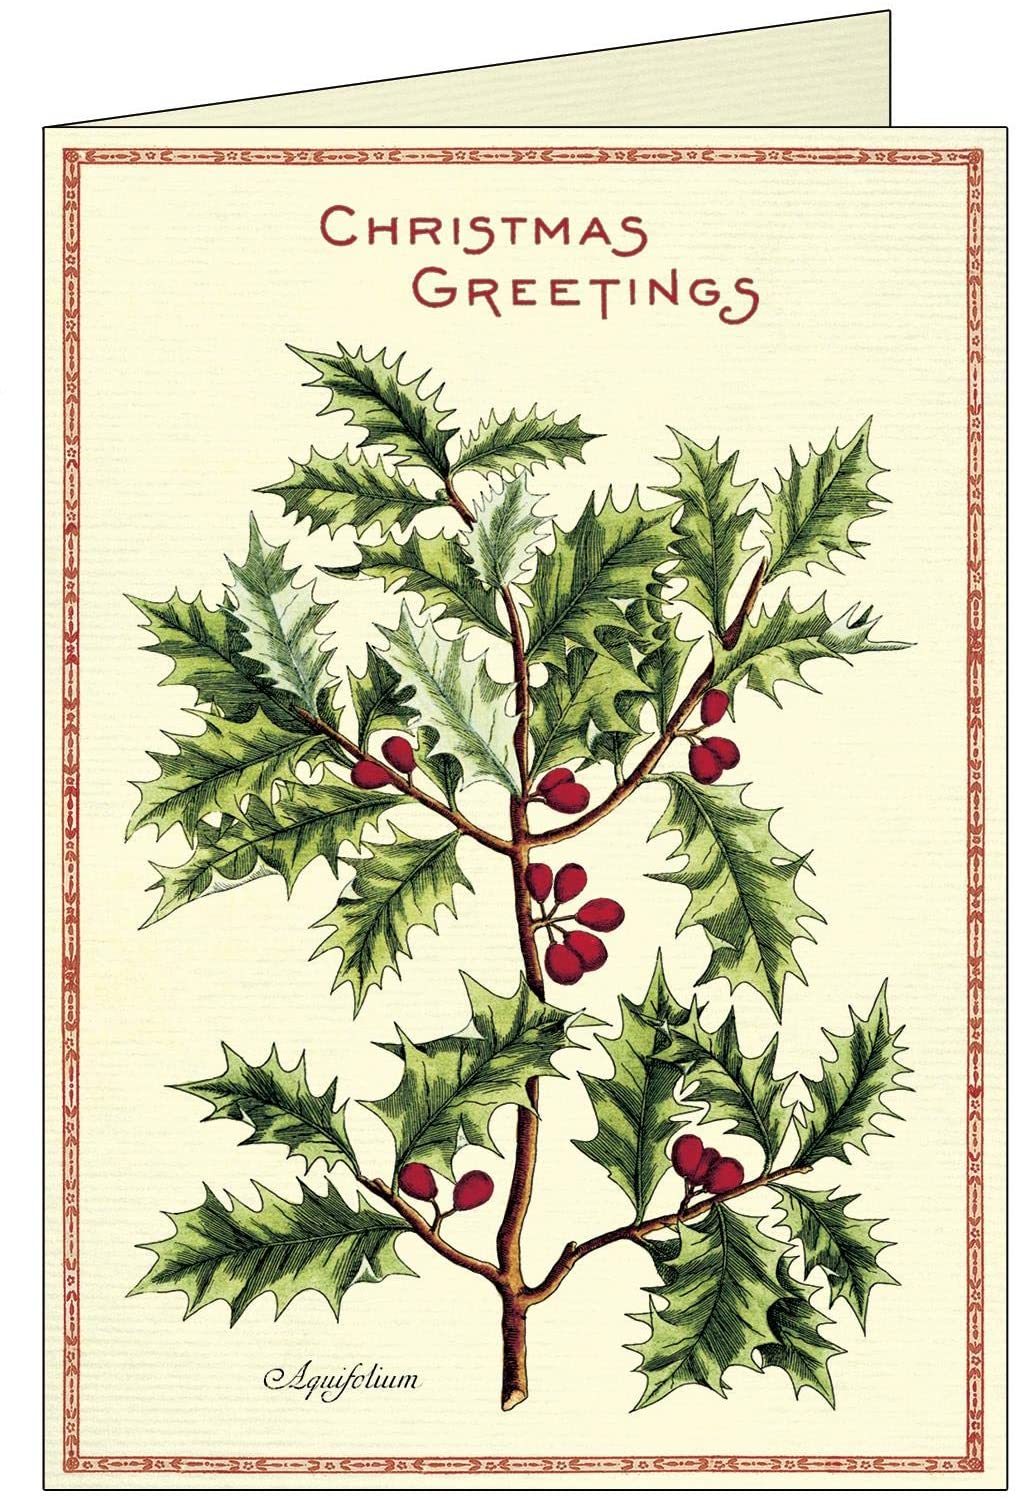 10 tarjetas de felicitación navideñas, diseño de acebo de Navidad. Cavallini Papers & Co., de venta en Amazon (16,99 euros)